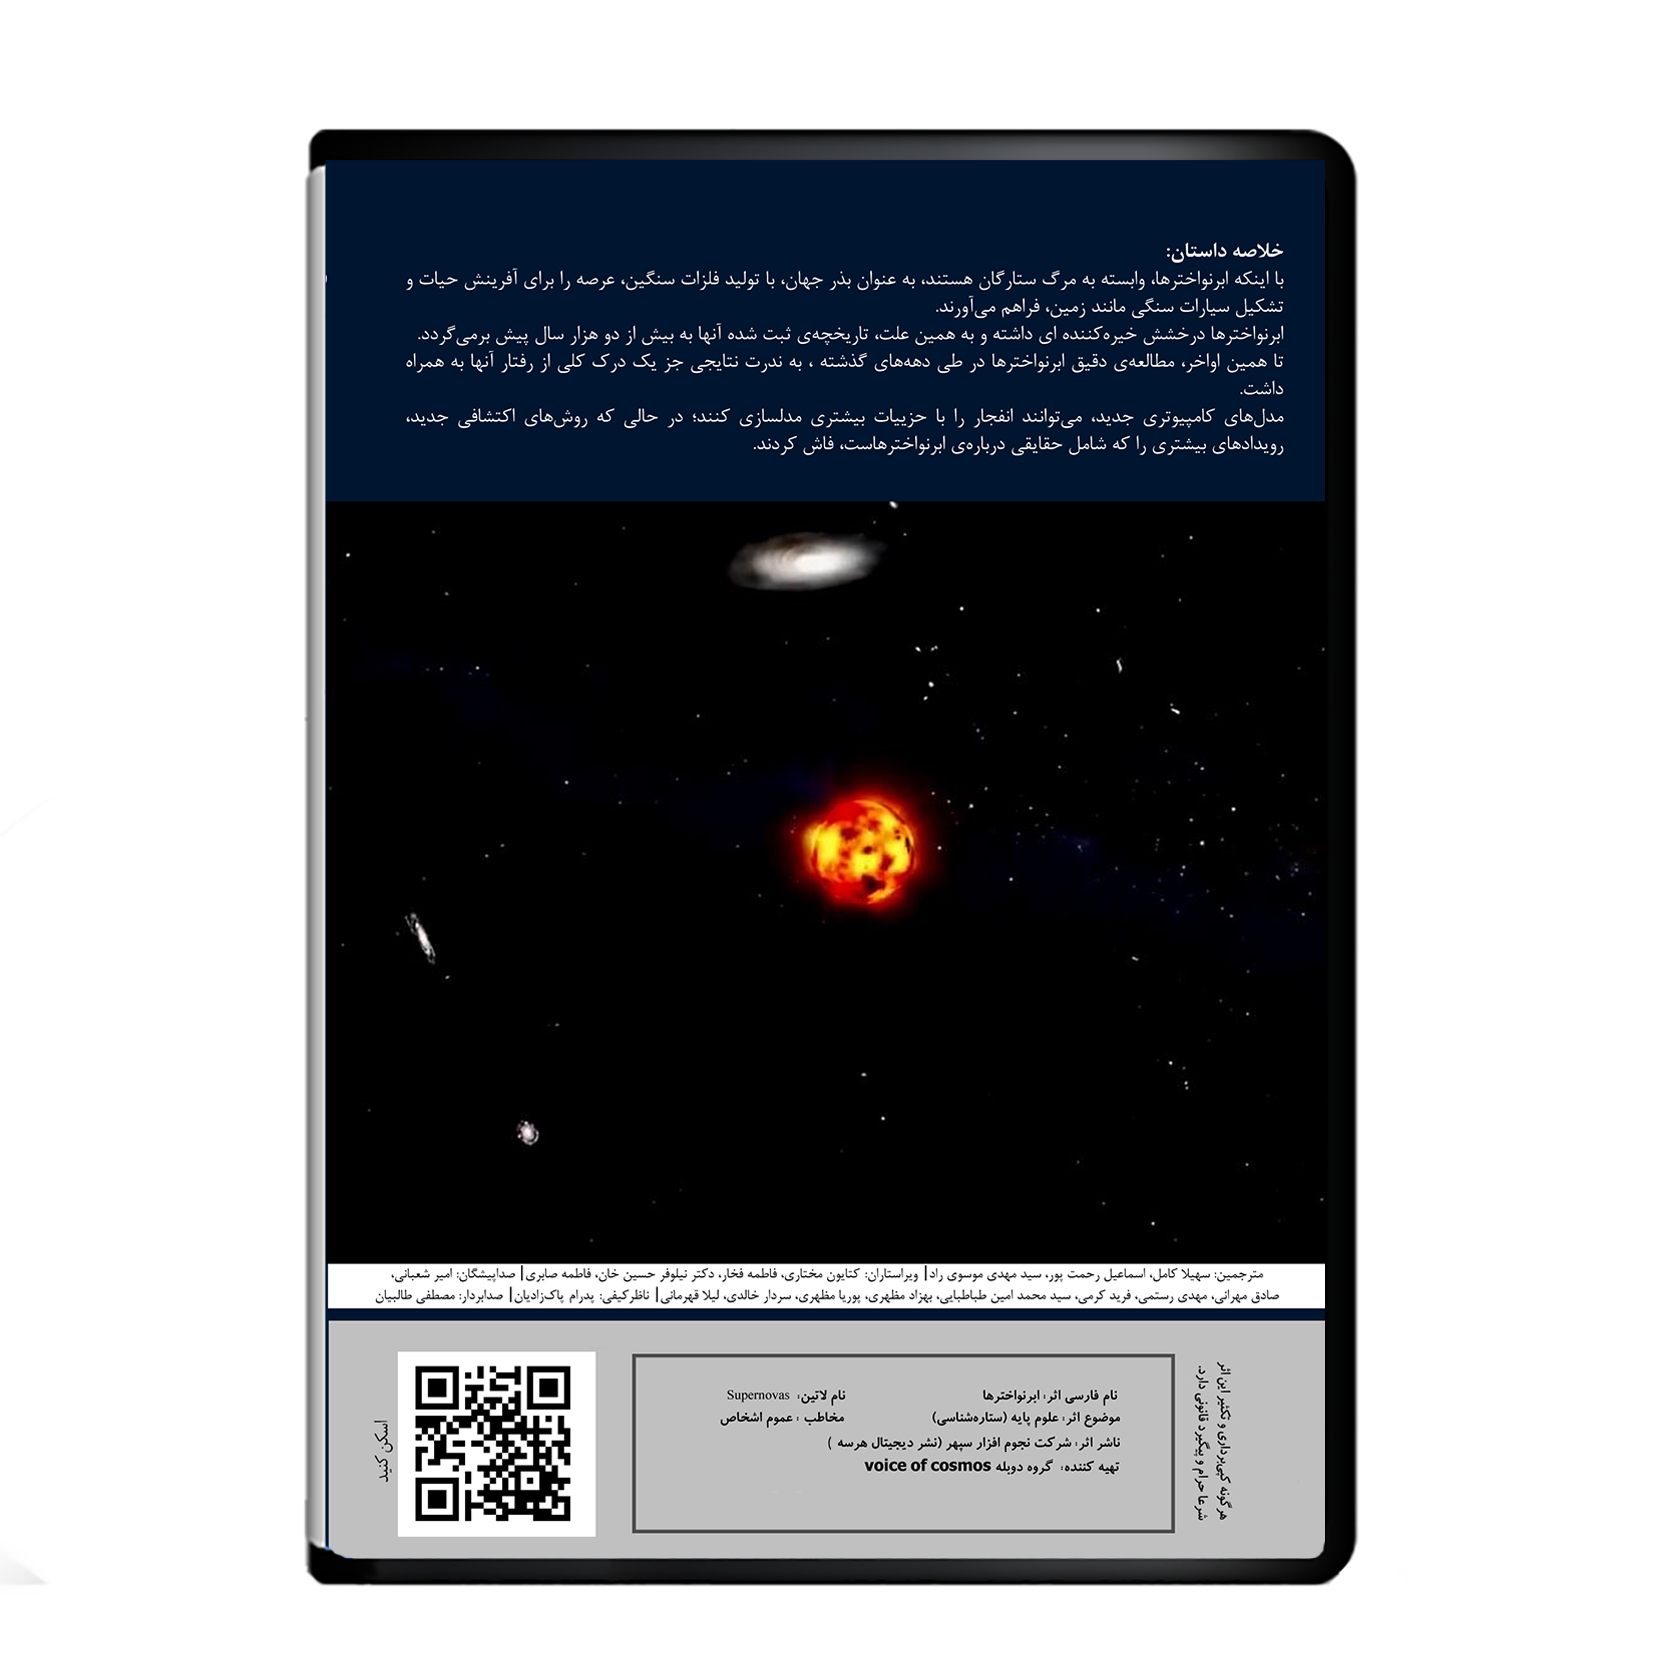 مستند ابرنواخترها اثر آوای کیهان از نشر دیجیتال هرسه